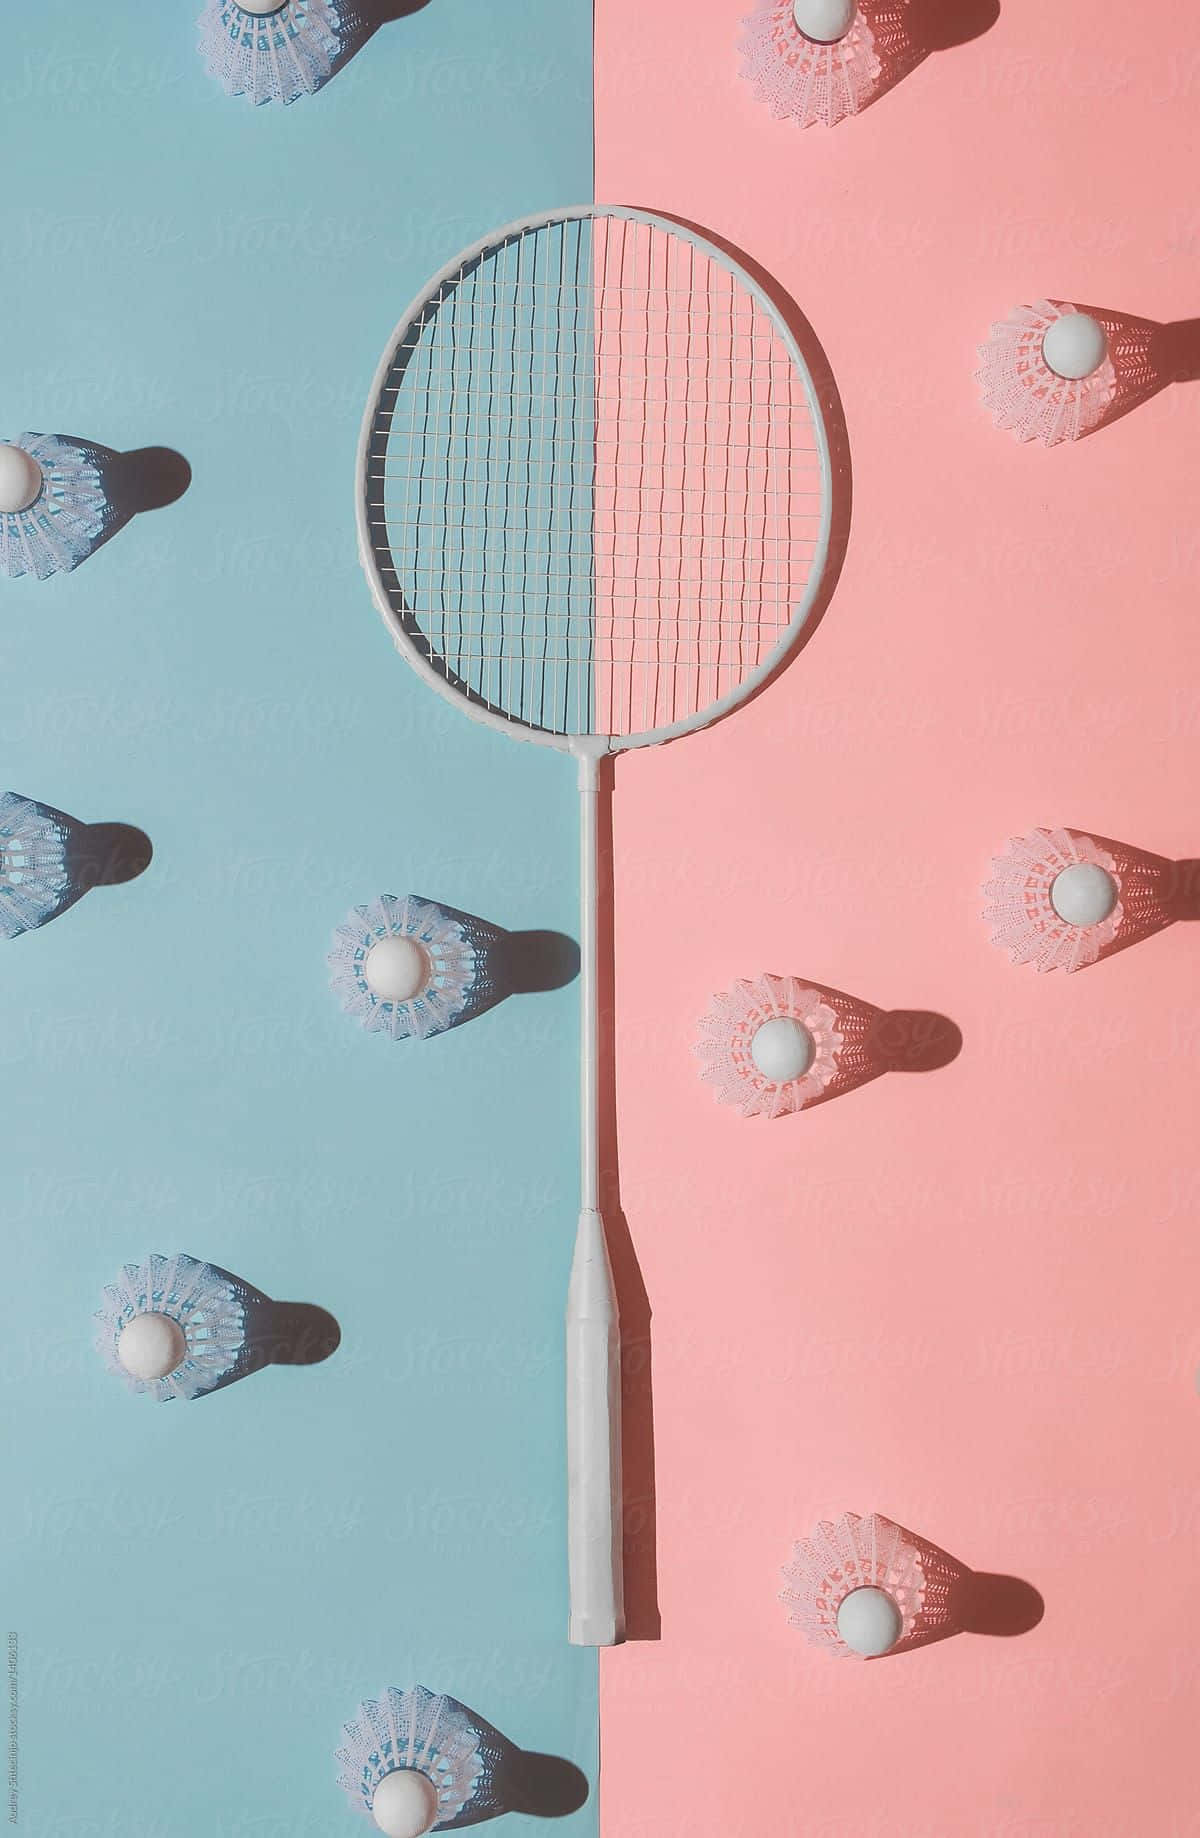 Racchettada Badminton Su Uno Sfondo Rosa E Blu Di Samantha Mcdonald Per Stocksy United